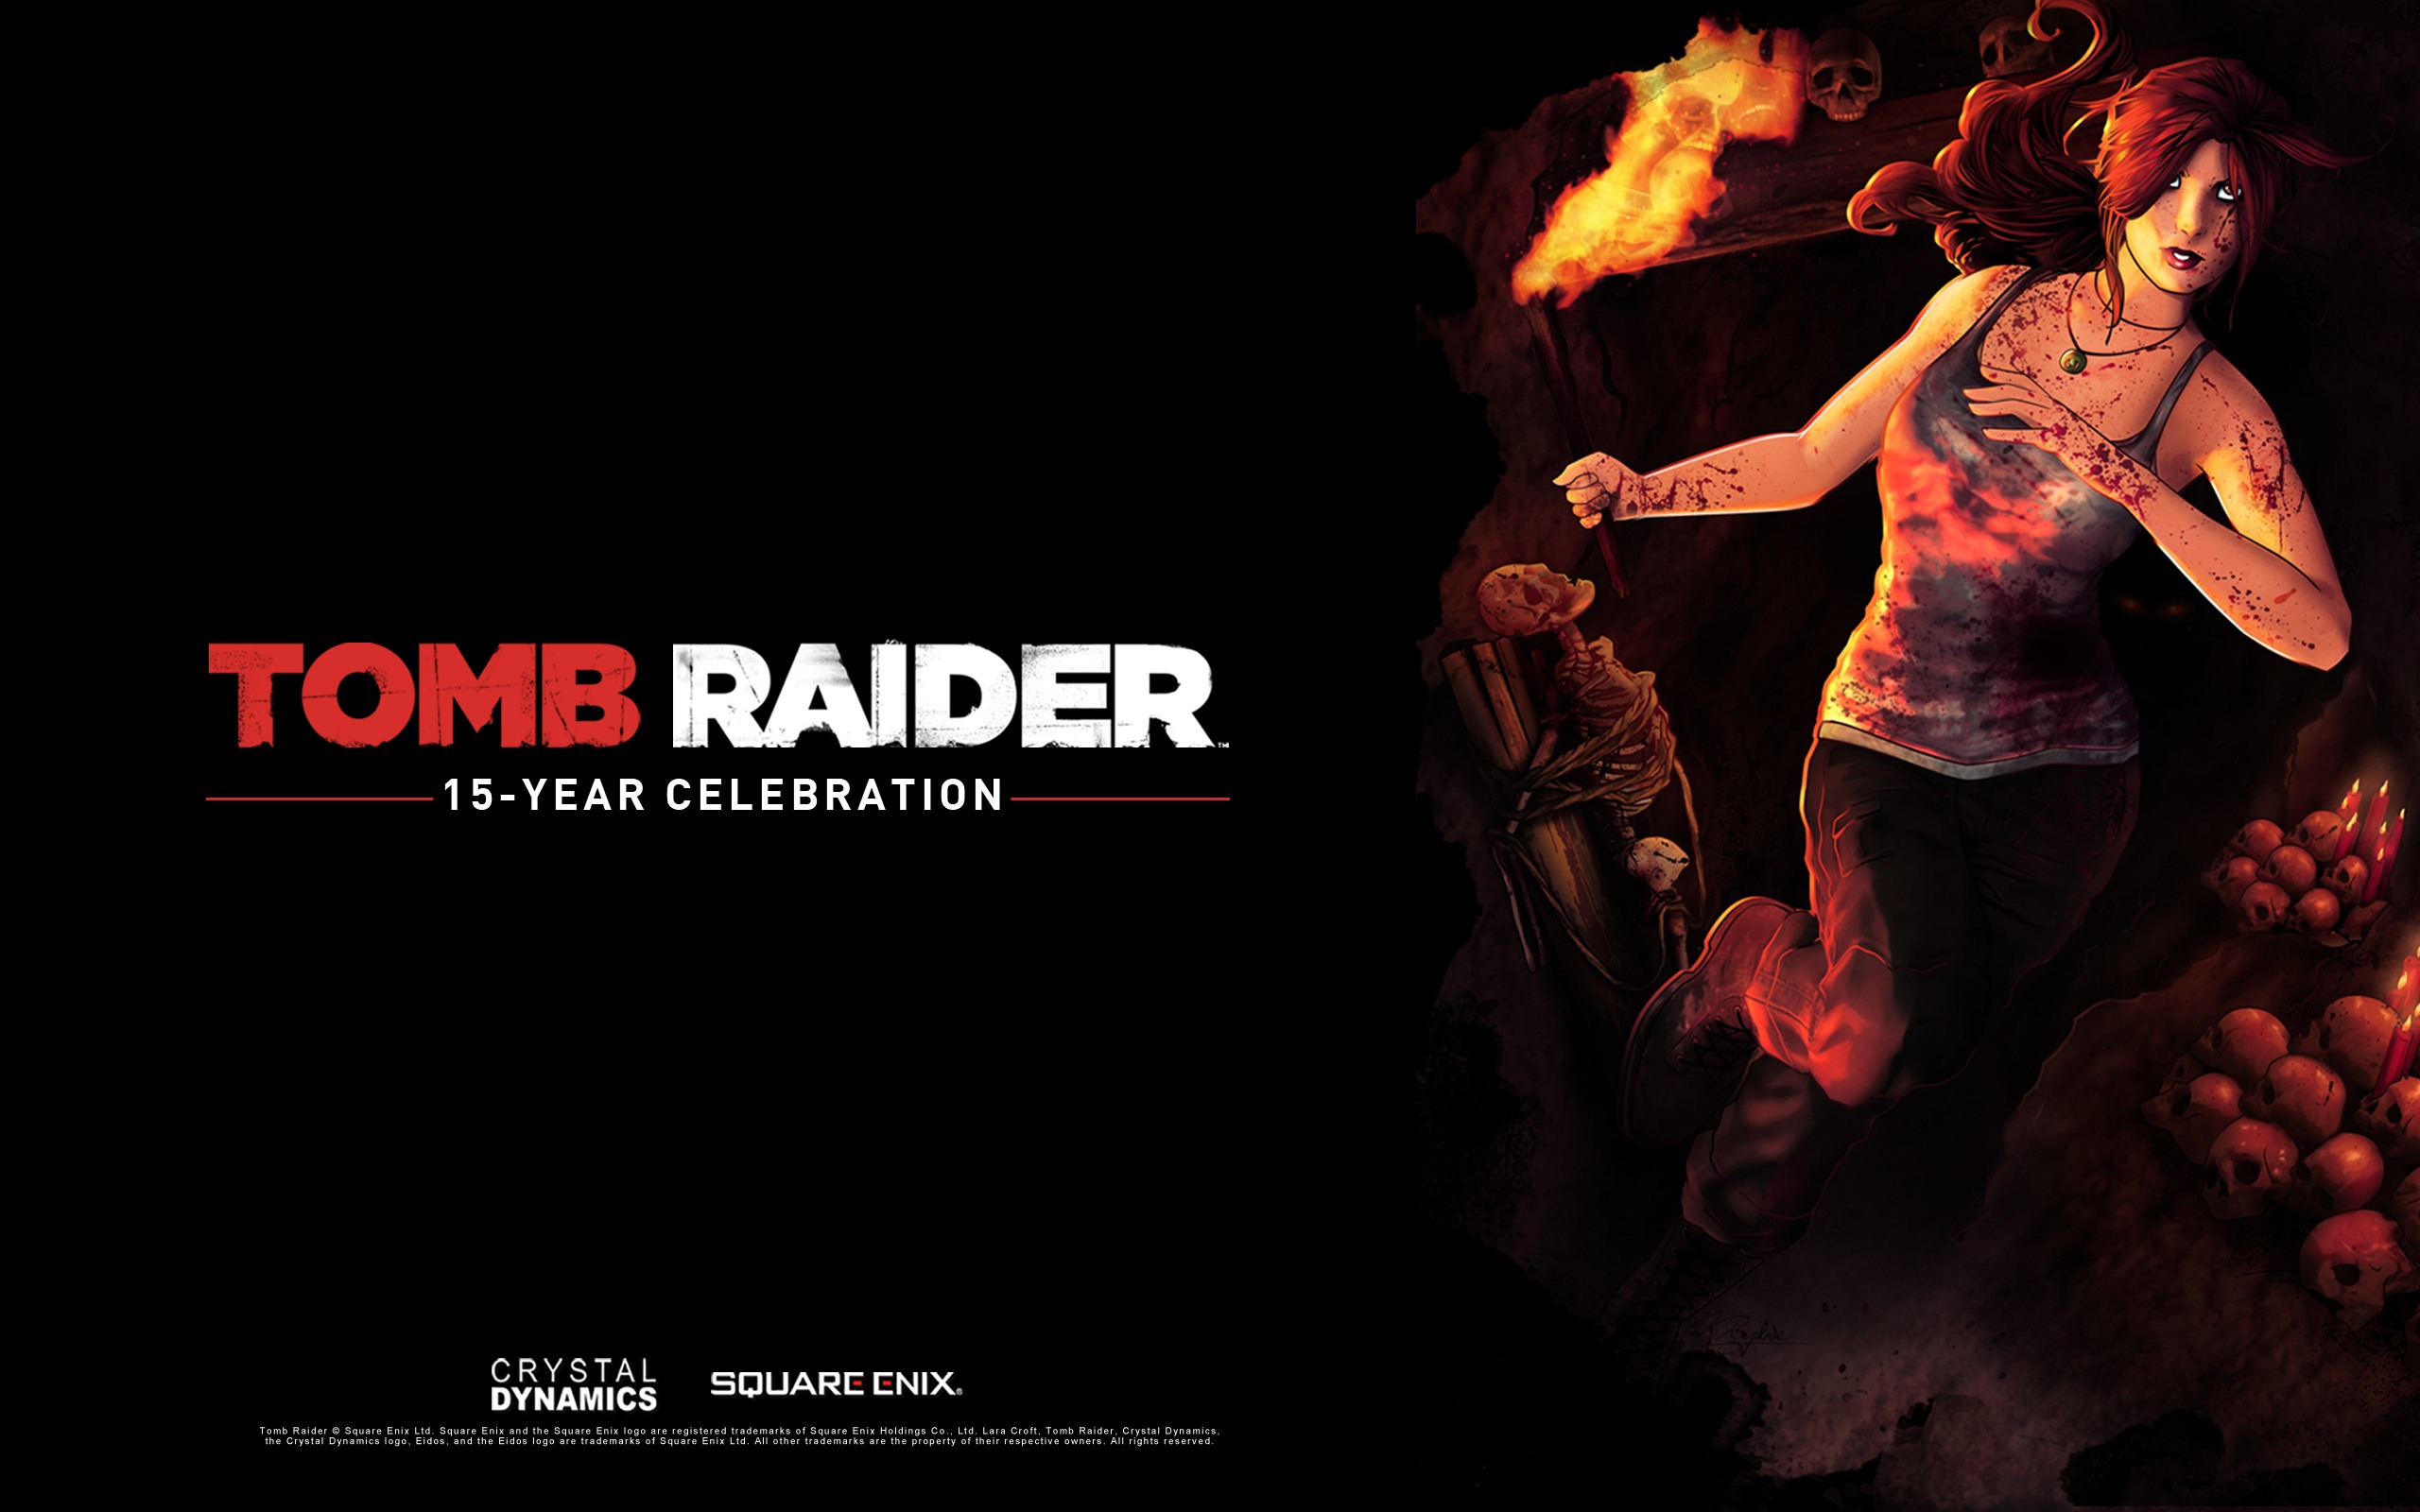 Tomb Raider 15-Year Celebration 古墓丽影15周年纪念版 高清壁纸4 - 2560x1600